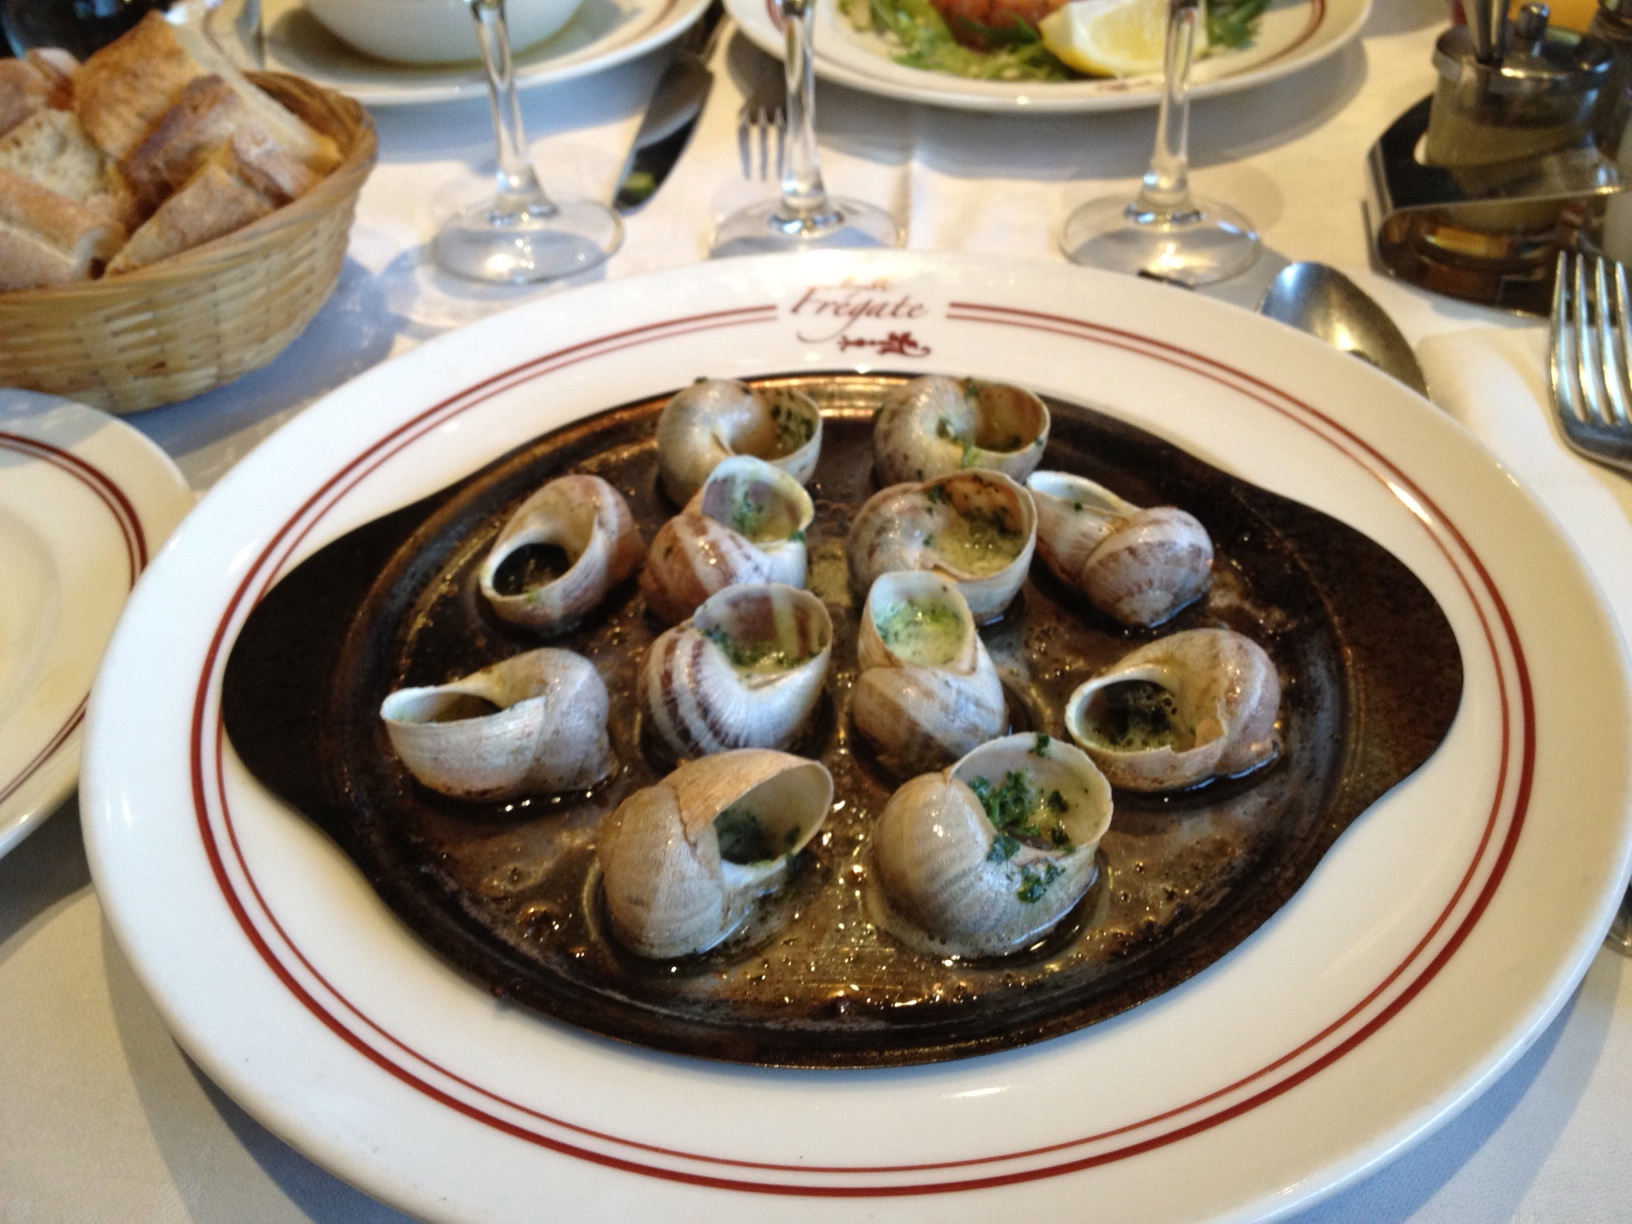 Les Escargots - Bourgogne snails